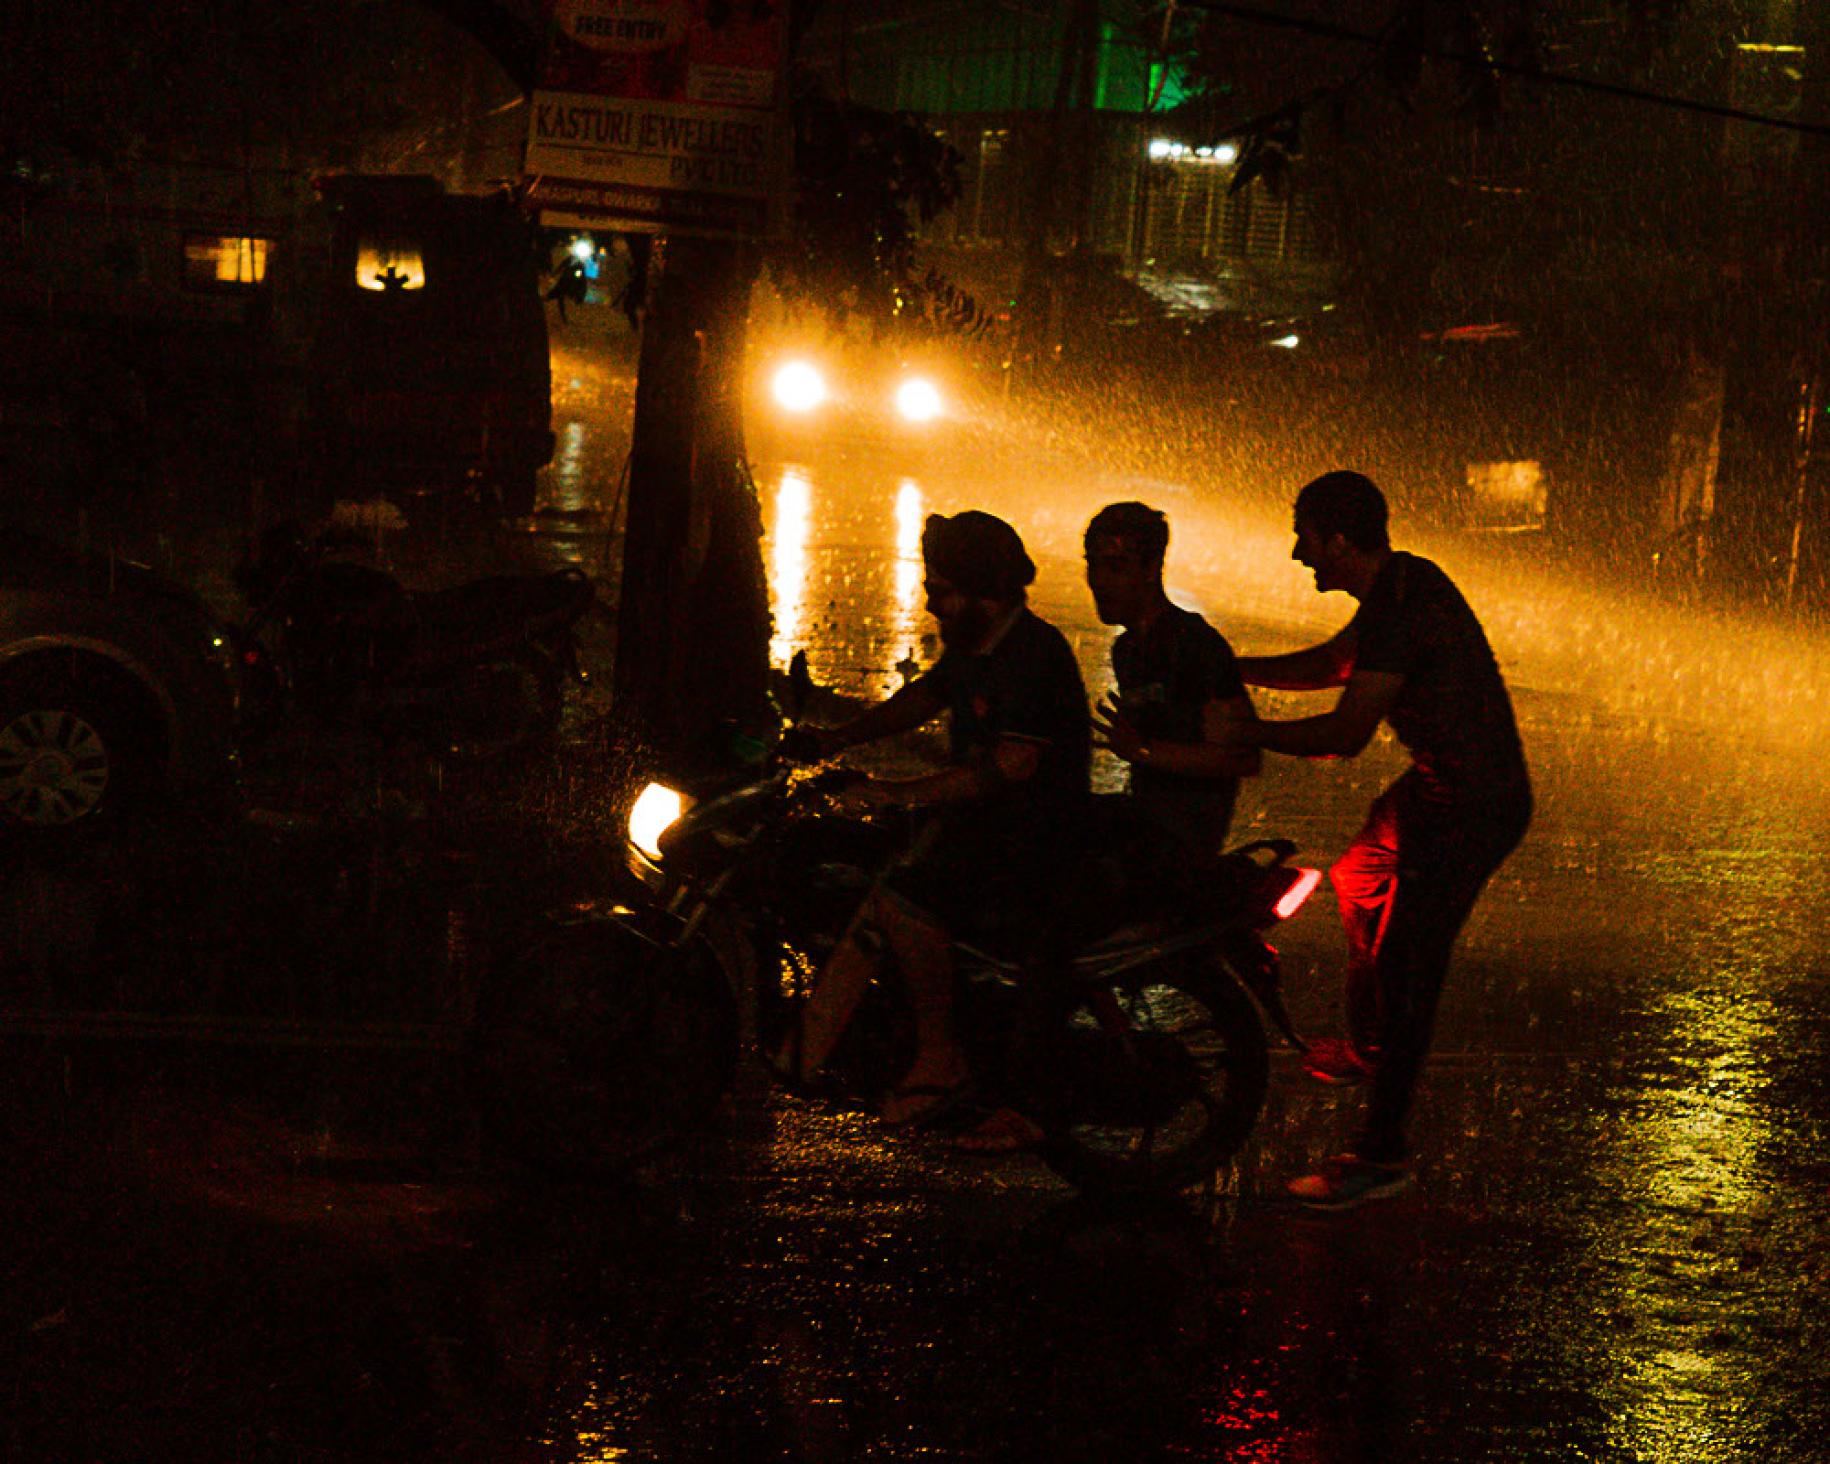 La silueta de tres personas, a contra luz, riendo bajo la lluvia en la calle, durante la noche, con dos focos que aclaran la toma desde lejos.